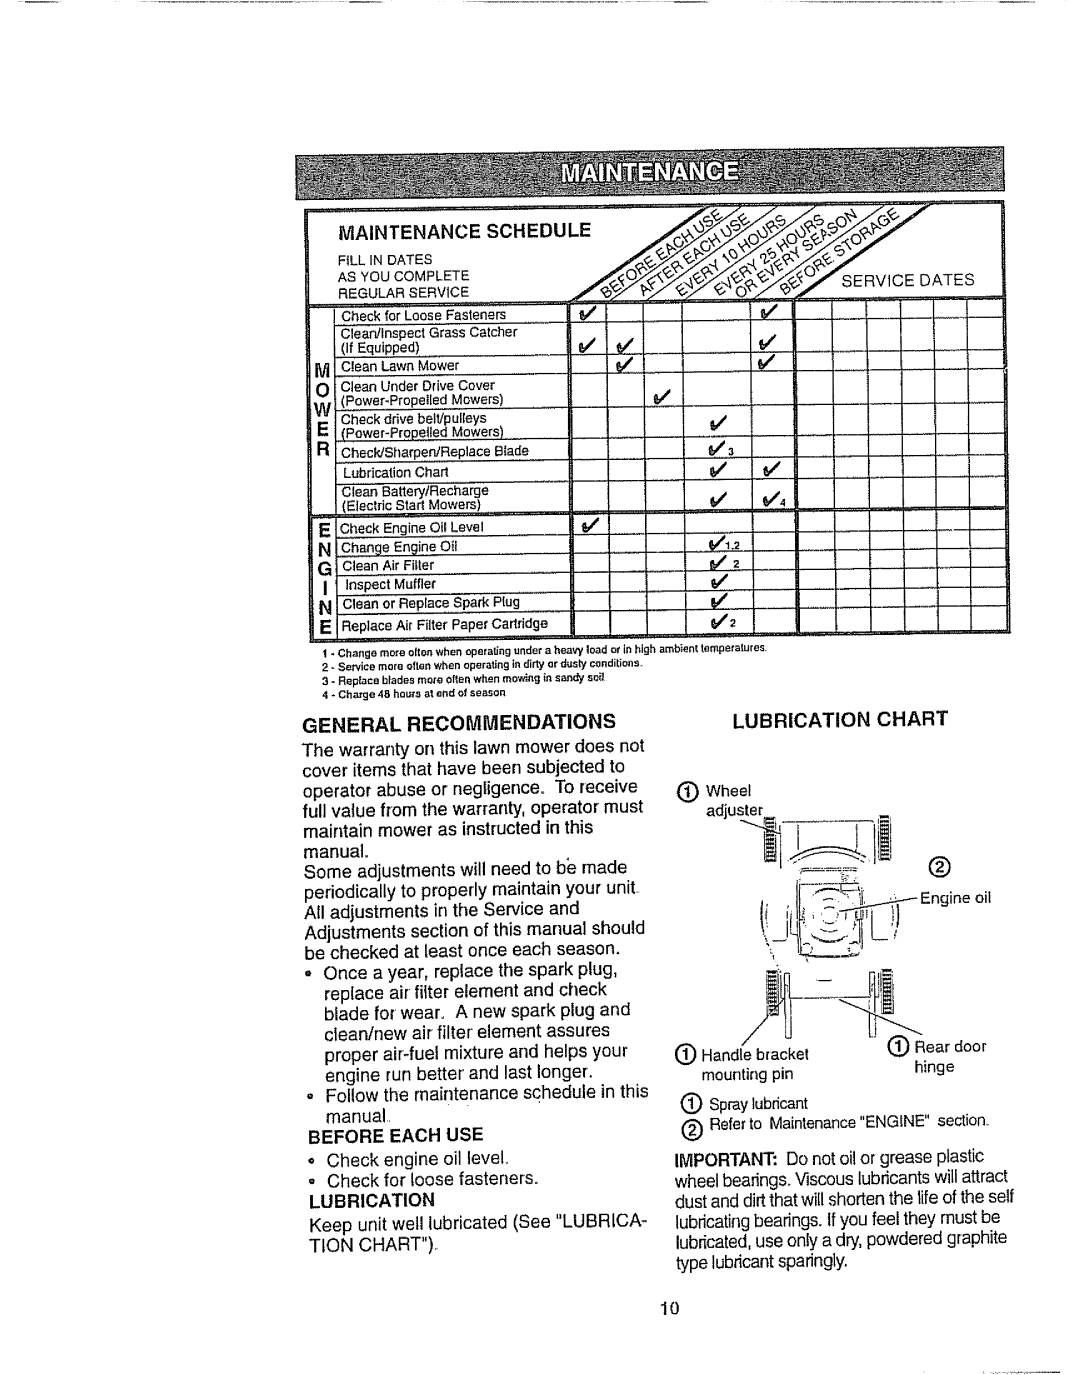 Craftsman 917.377592 I! l+l,L+ l; li1, Ma,+ .A.Oeso.Eoole, Lubrication Chart, General Recommendations, manual 